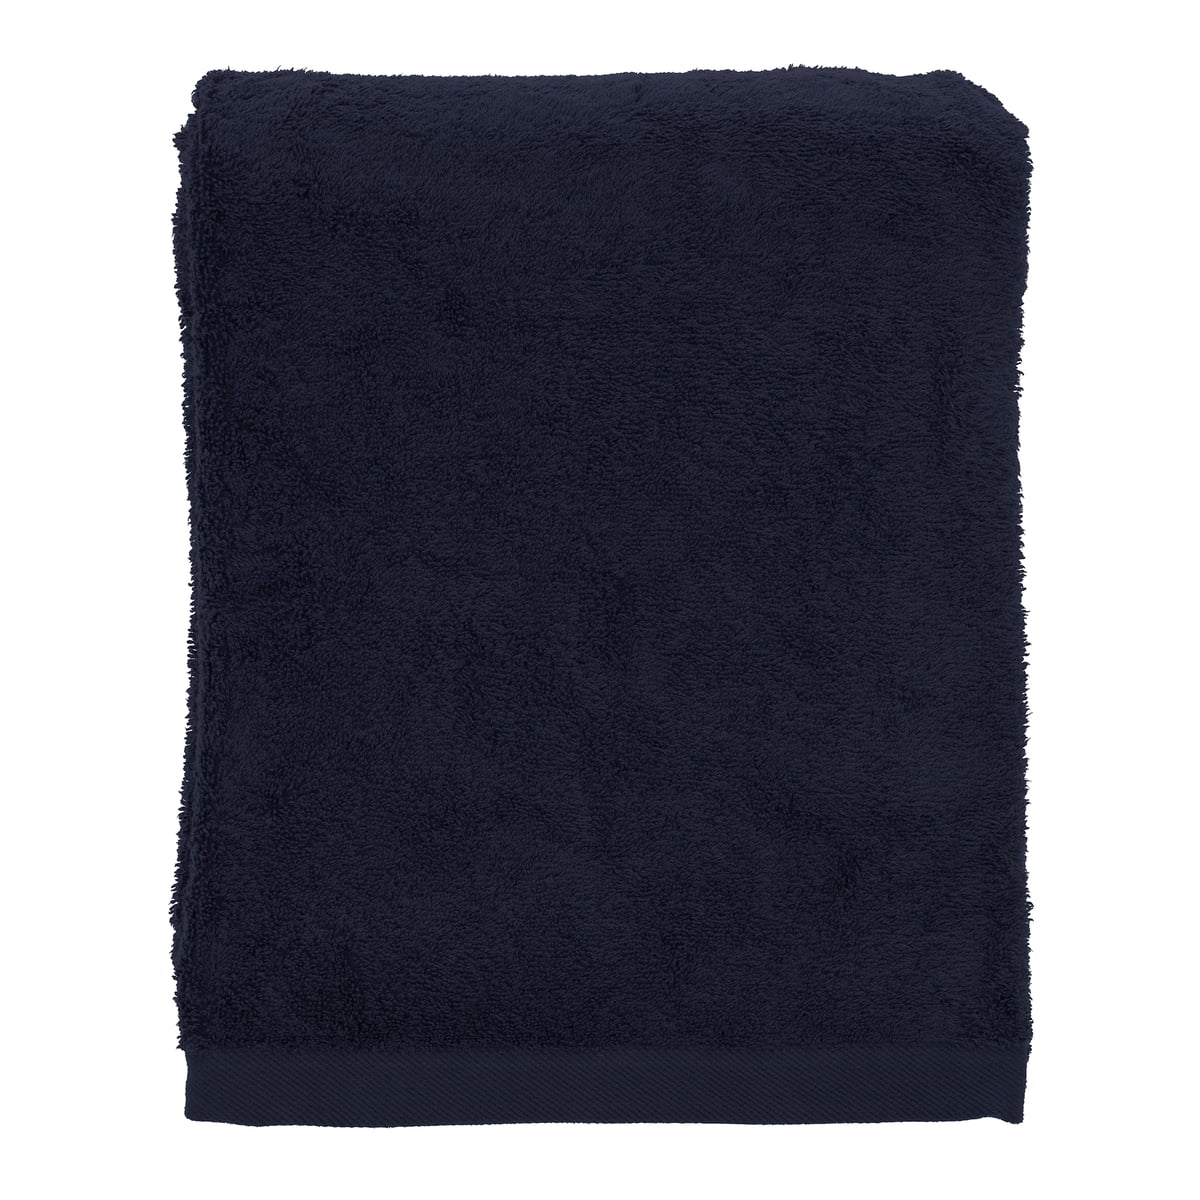 södahl - comfort serviette de bain, 90 x 150 cm, bleu marine